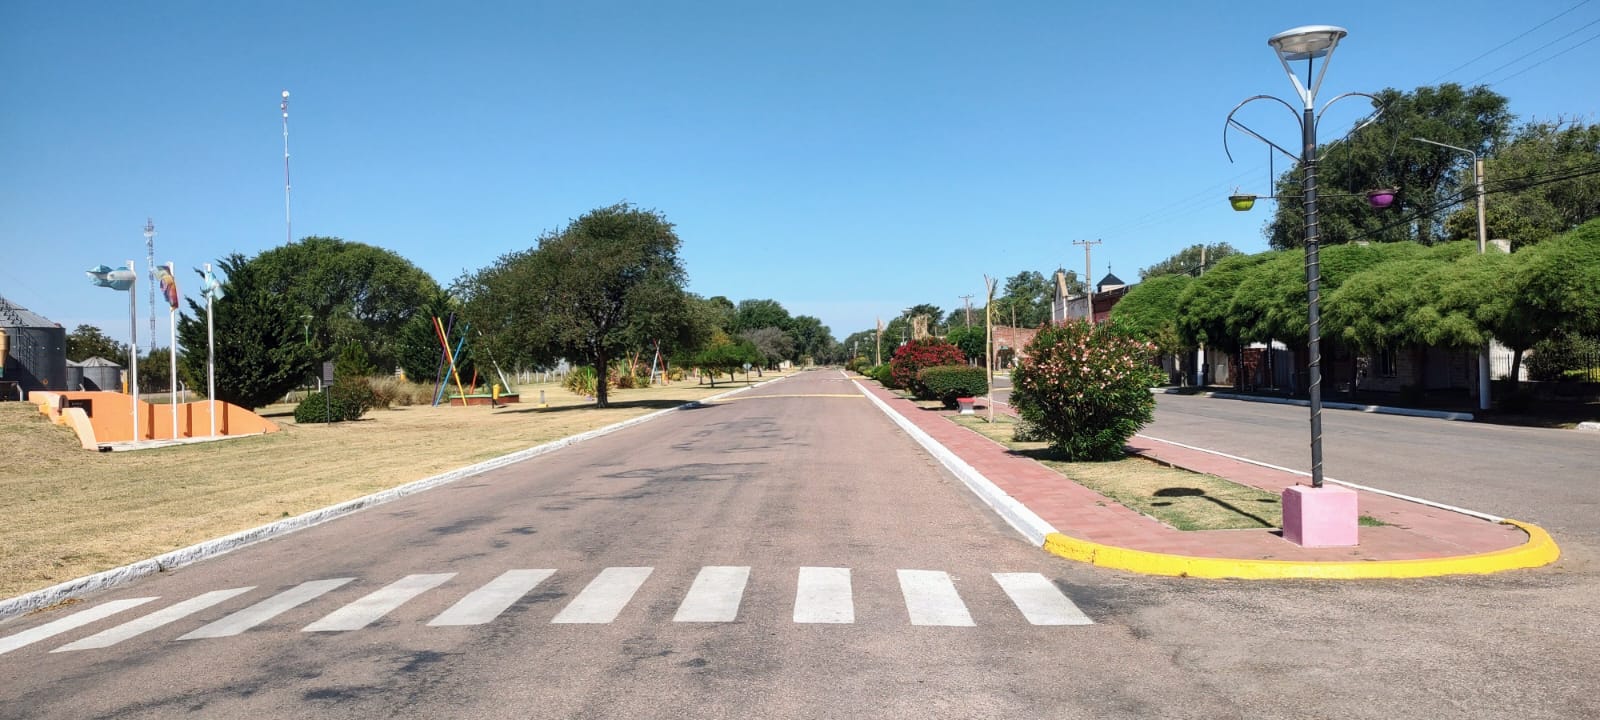 El Boulevard Núñez que pasará a llamarse Diego Maradona